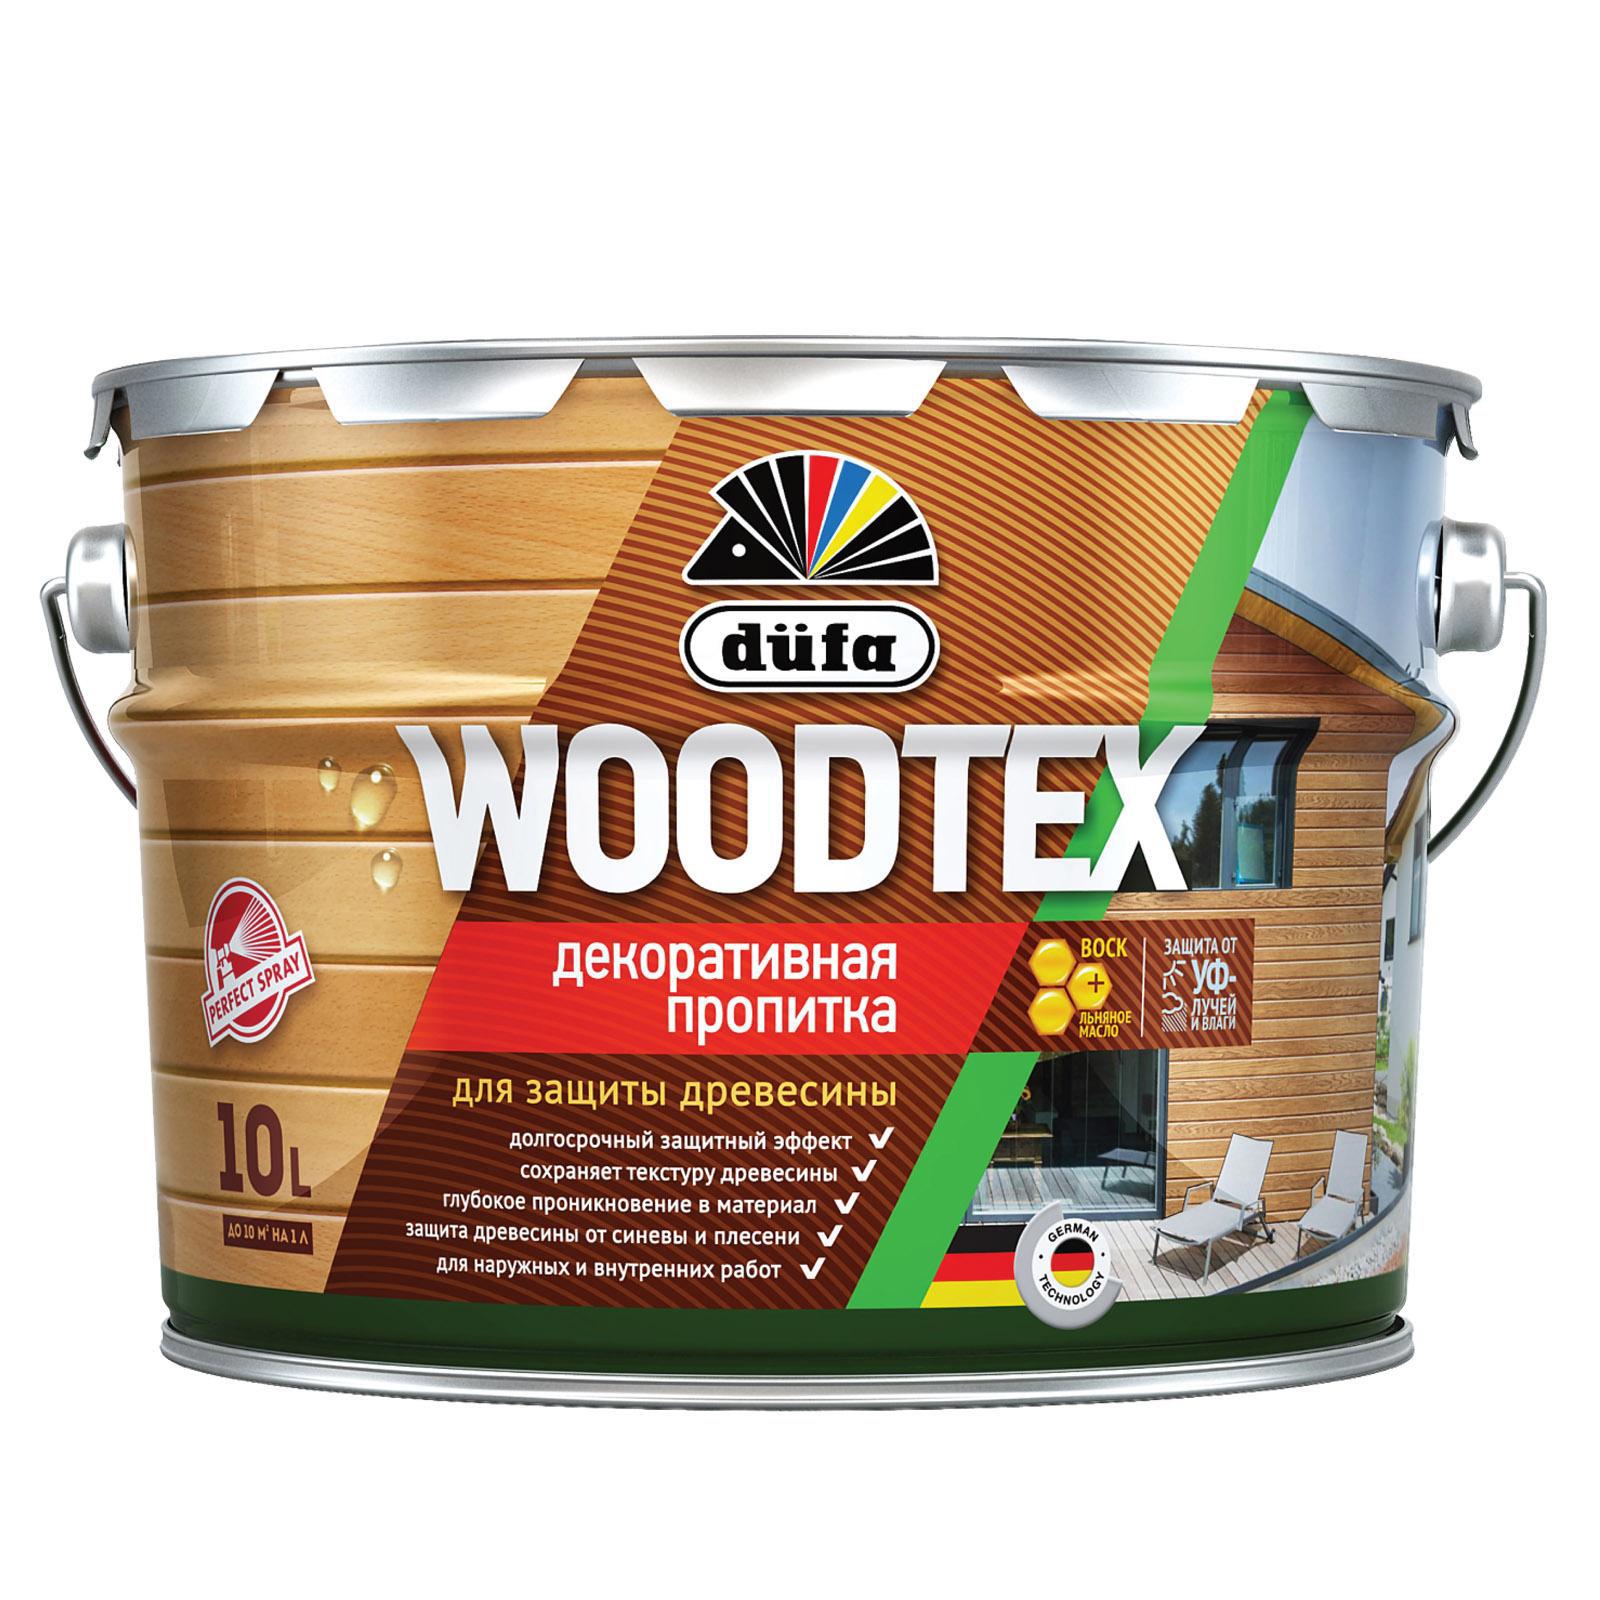 90194544 Пропитка декоративная для защиты древесины алкидная Woodtex махагон 10 л STLM-0128476 DUFA